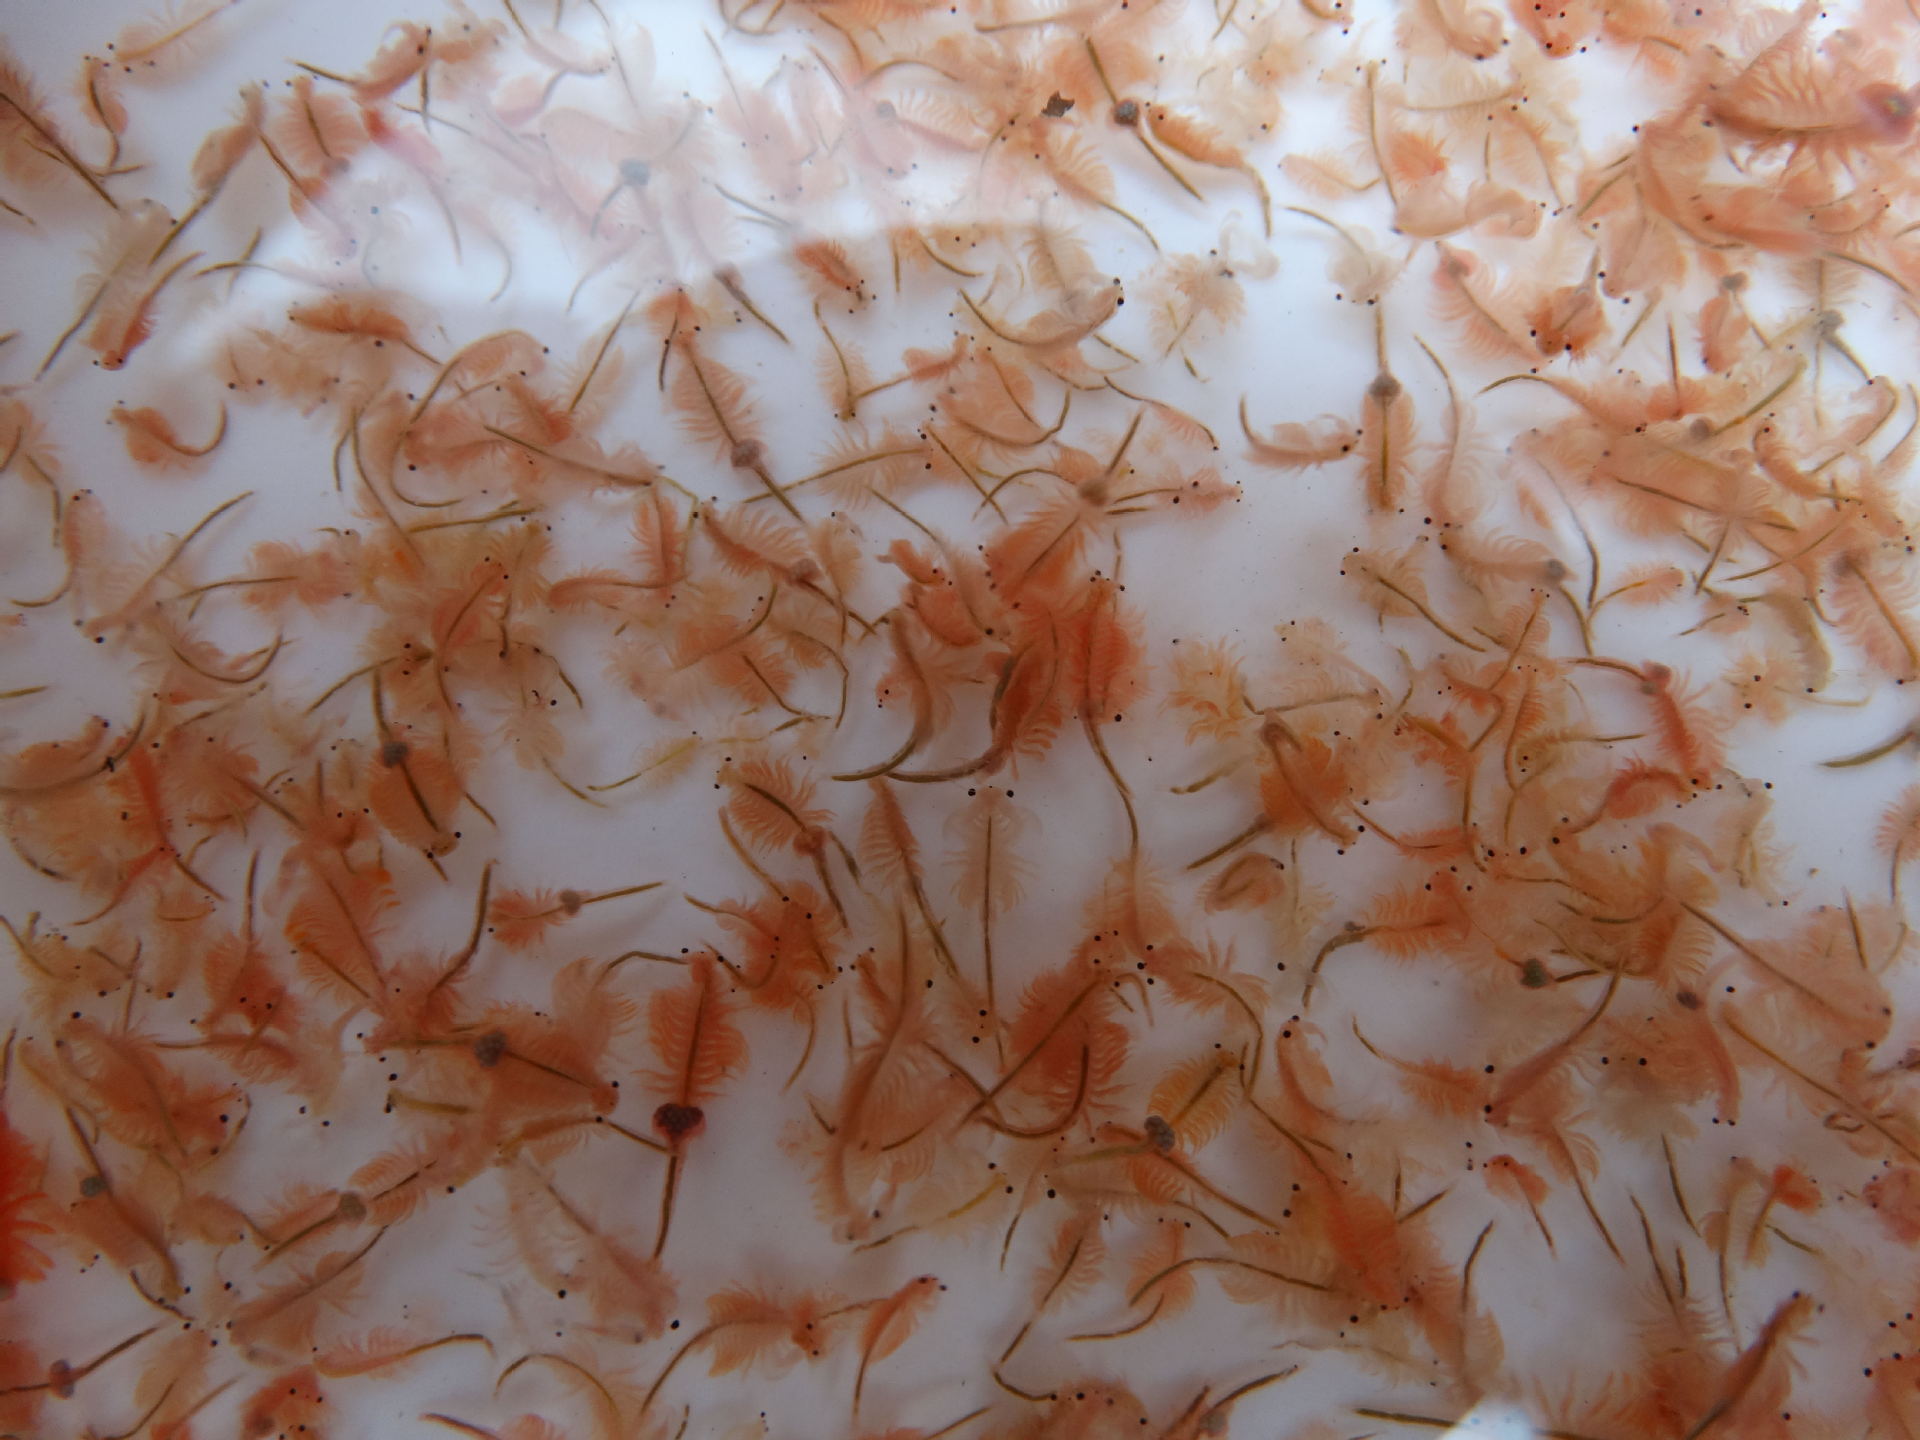 杂卤石硫酸盐矿物 促进黑水虻幼虫生长 - 农牧世界